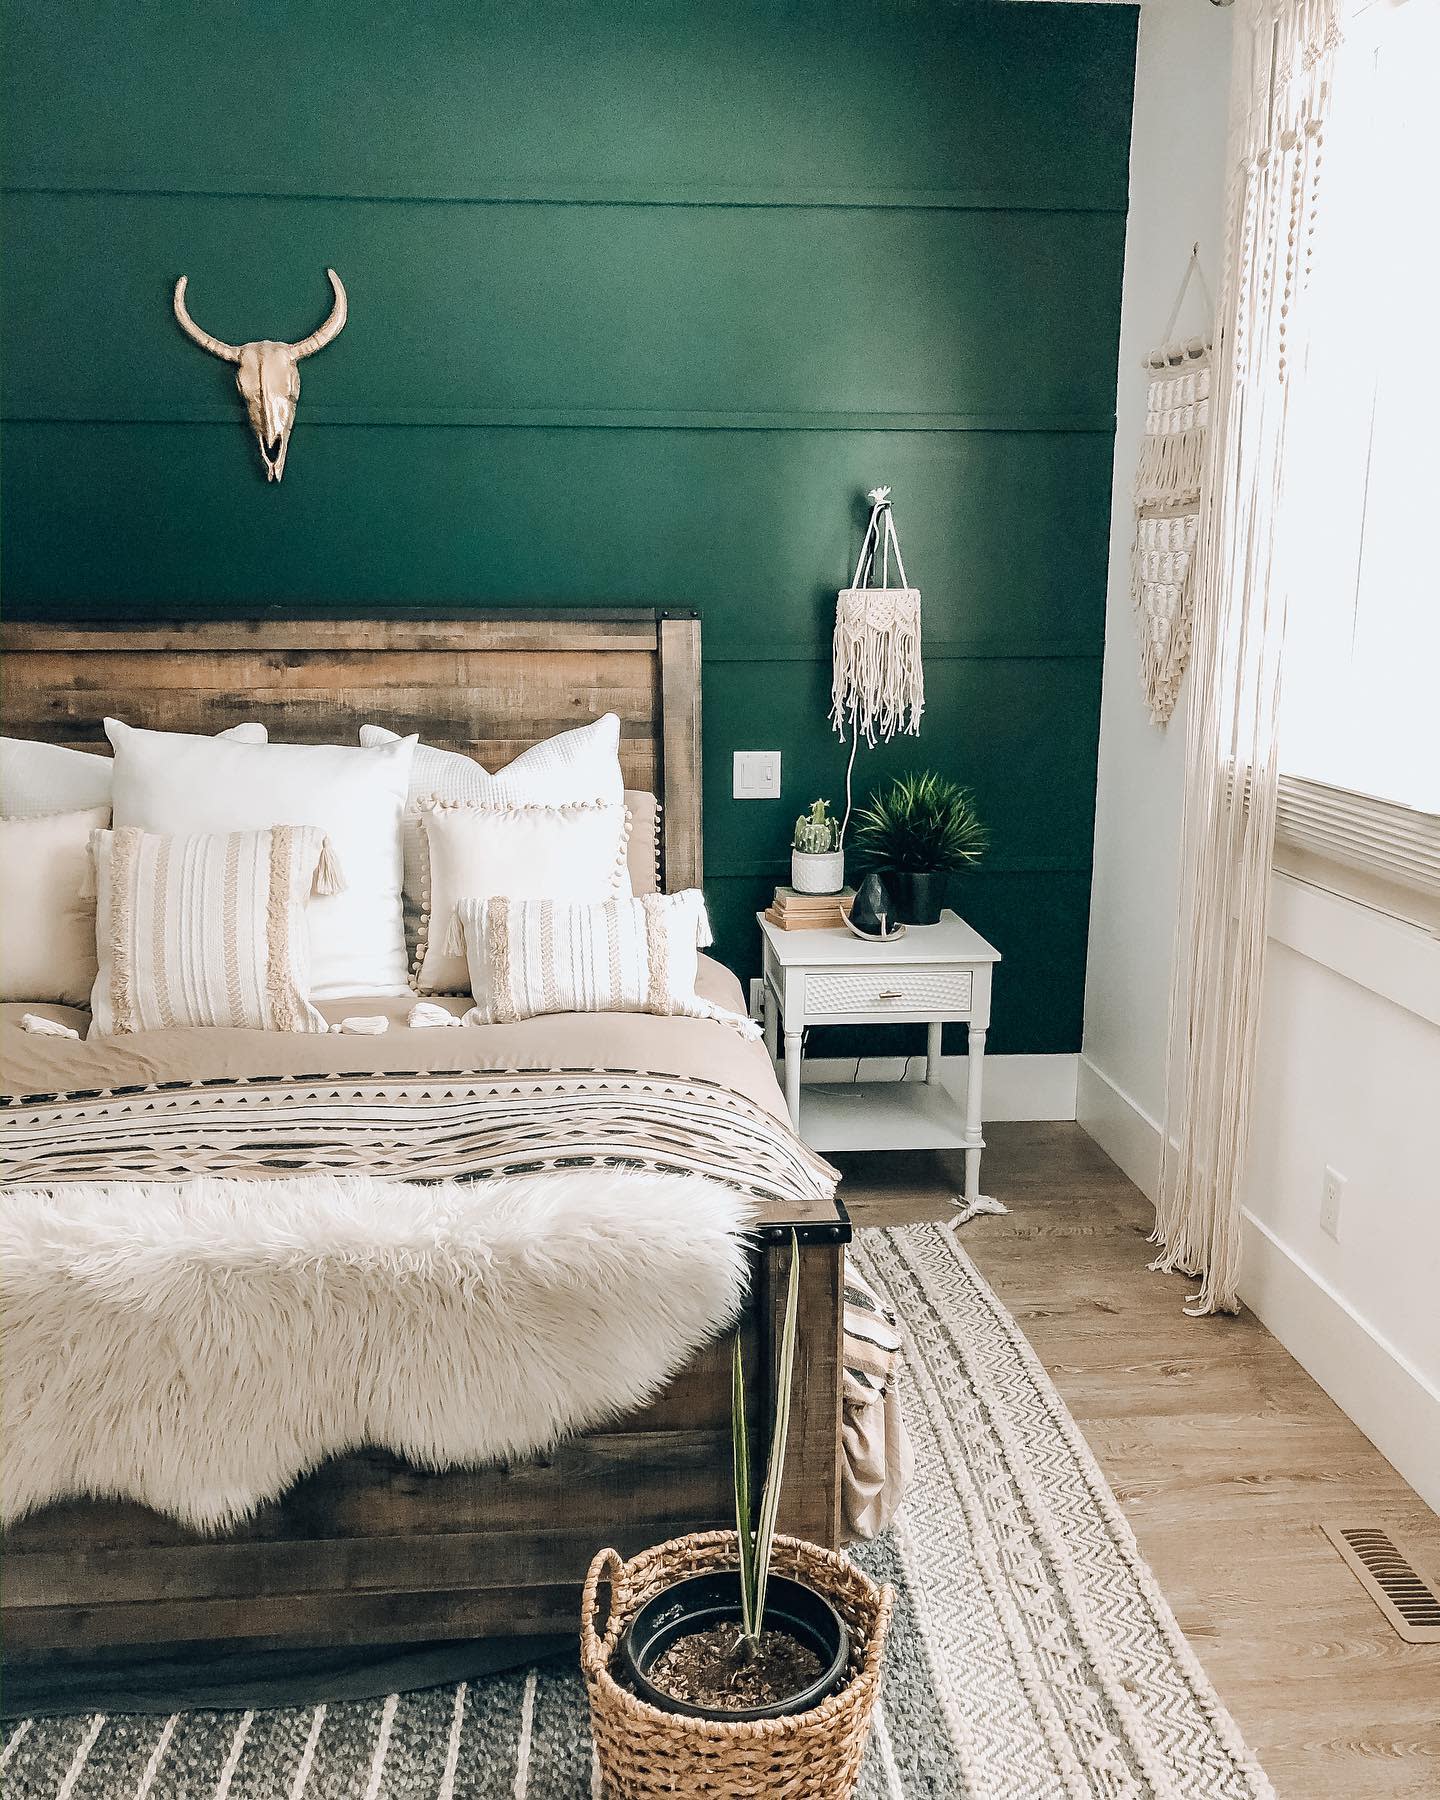 Dormitorio verde oscuro y decoración nórdica